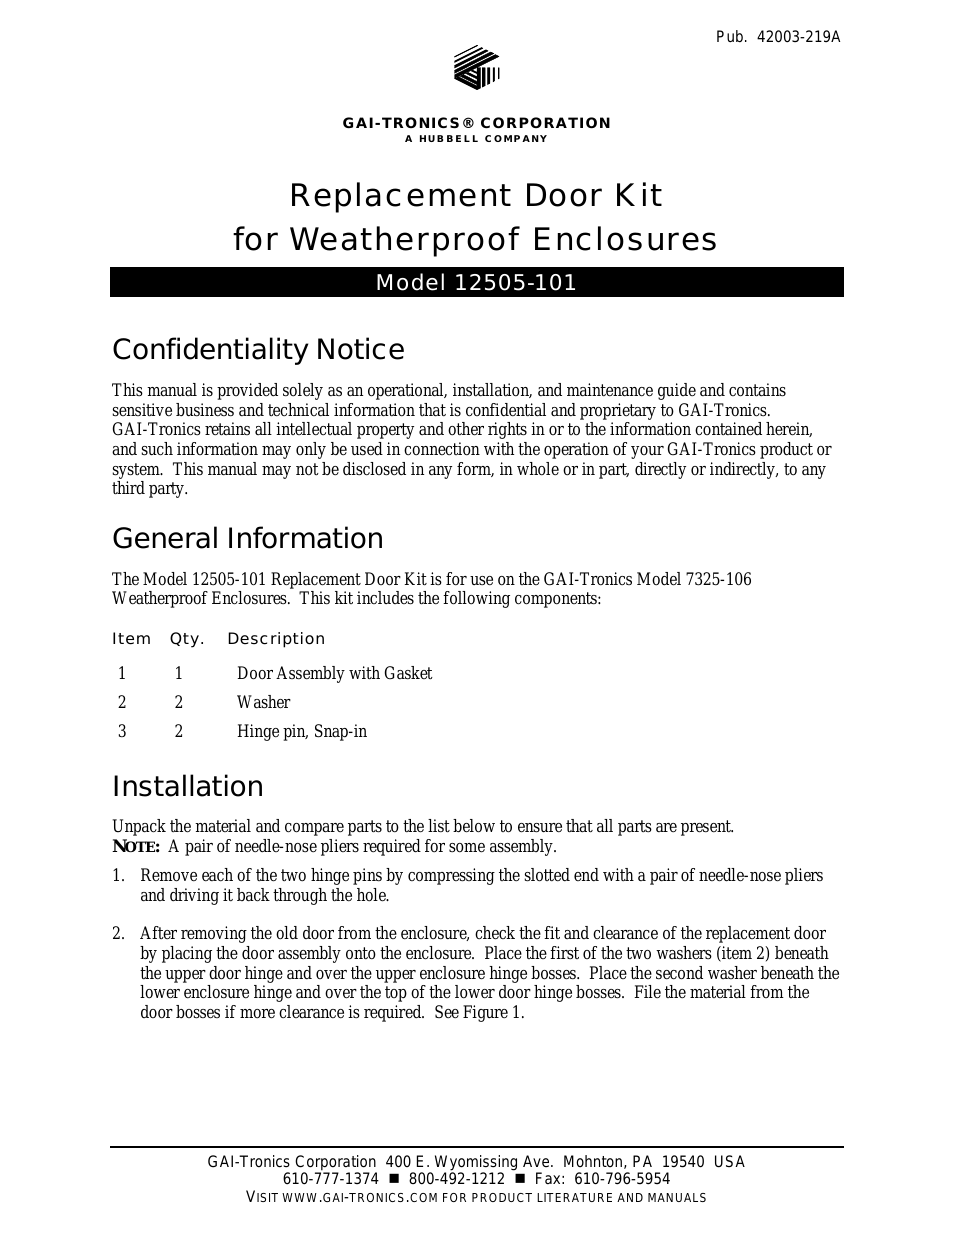 12505-101 Replacement Door Kit Weatherproof Enclosures